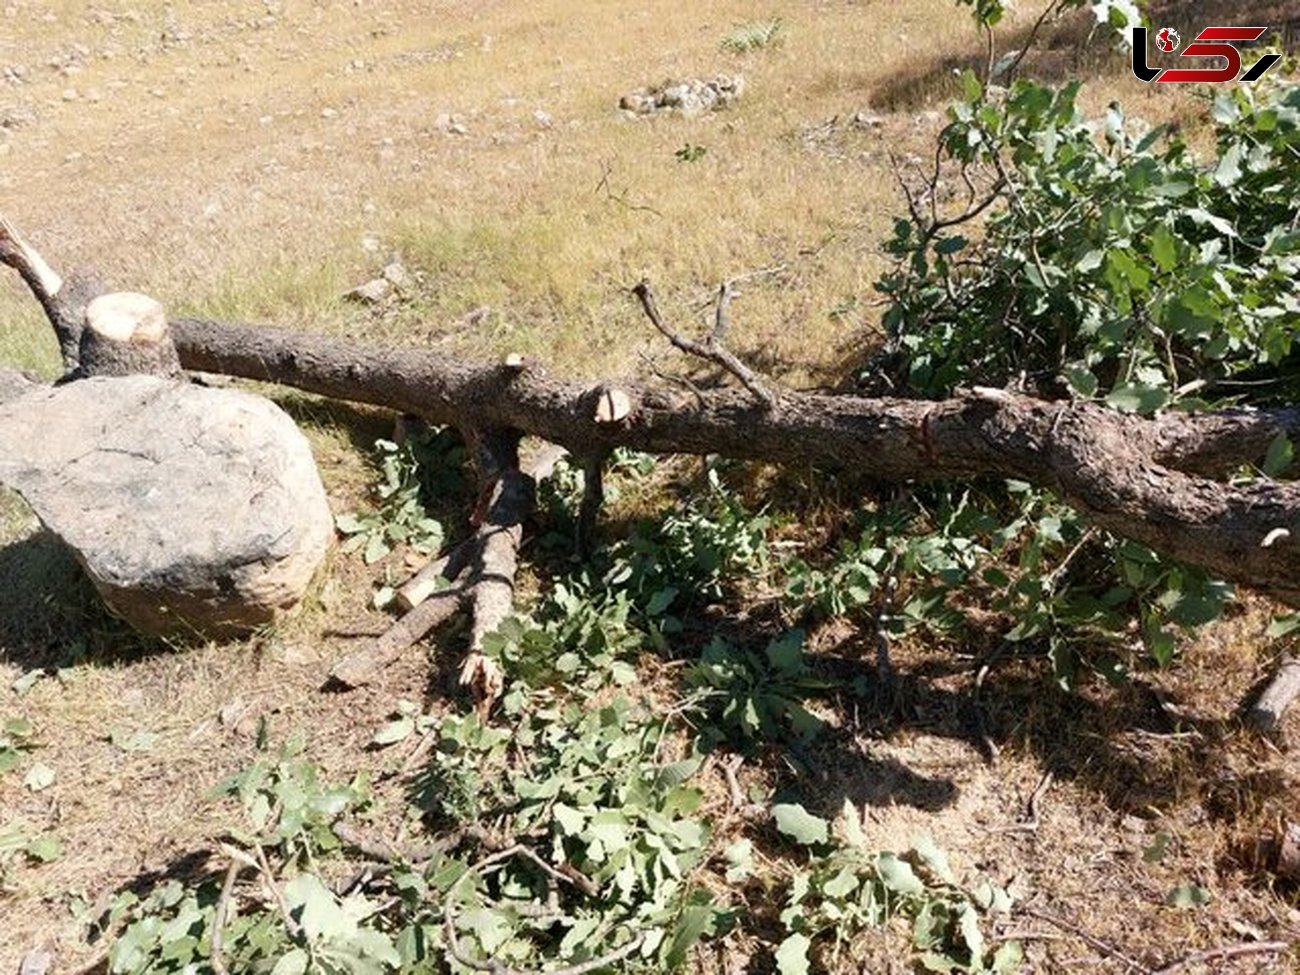 داستان تلخ قطع شبانه درختان بلوط این بار در شهرستان دنا+ عکس های تکاندهنده